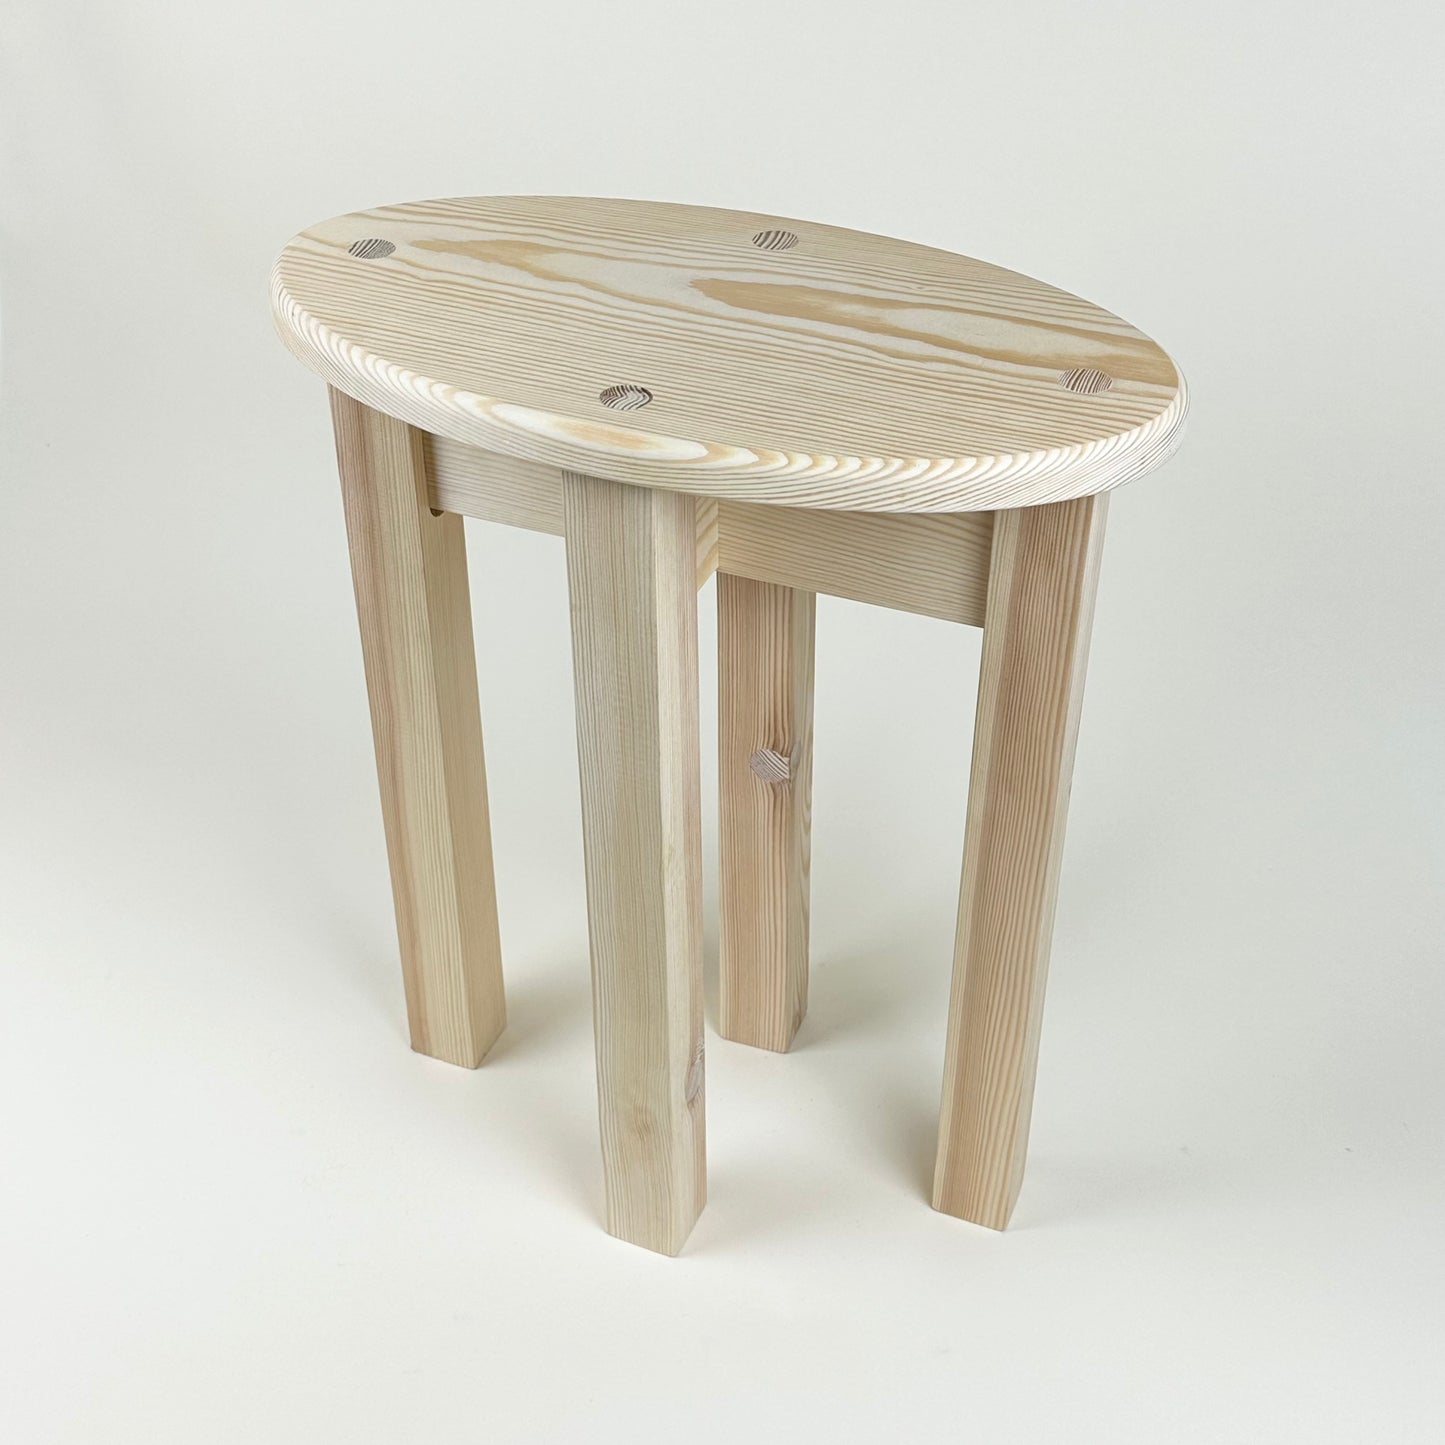 "OVAL1" wooden stool by Hugo Hammarlund